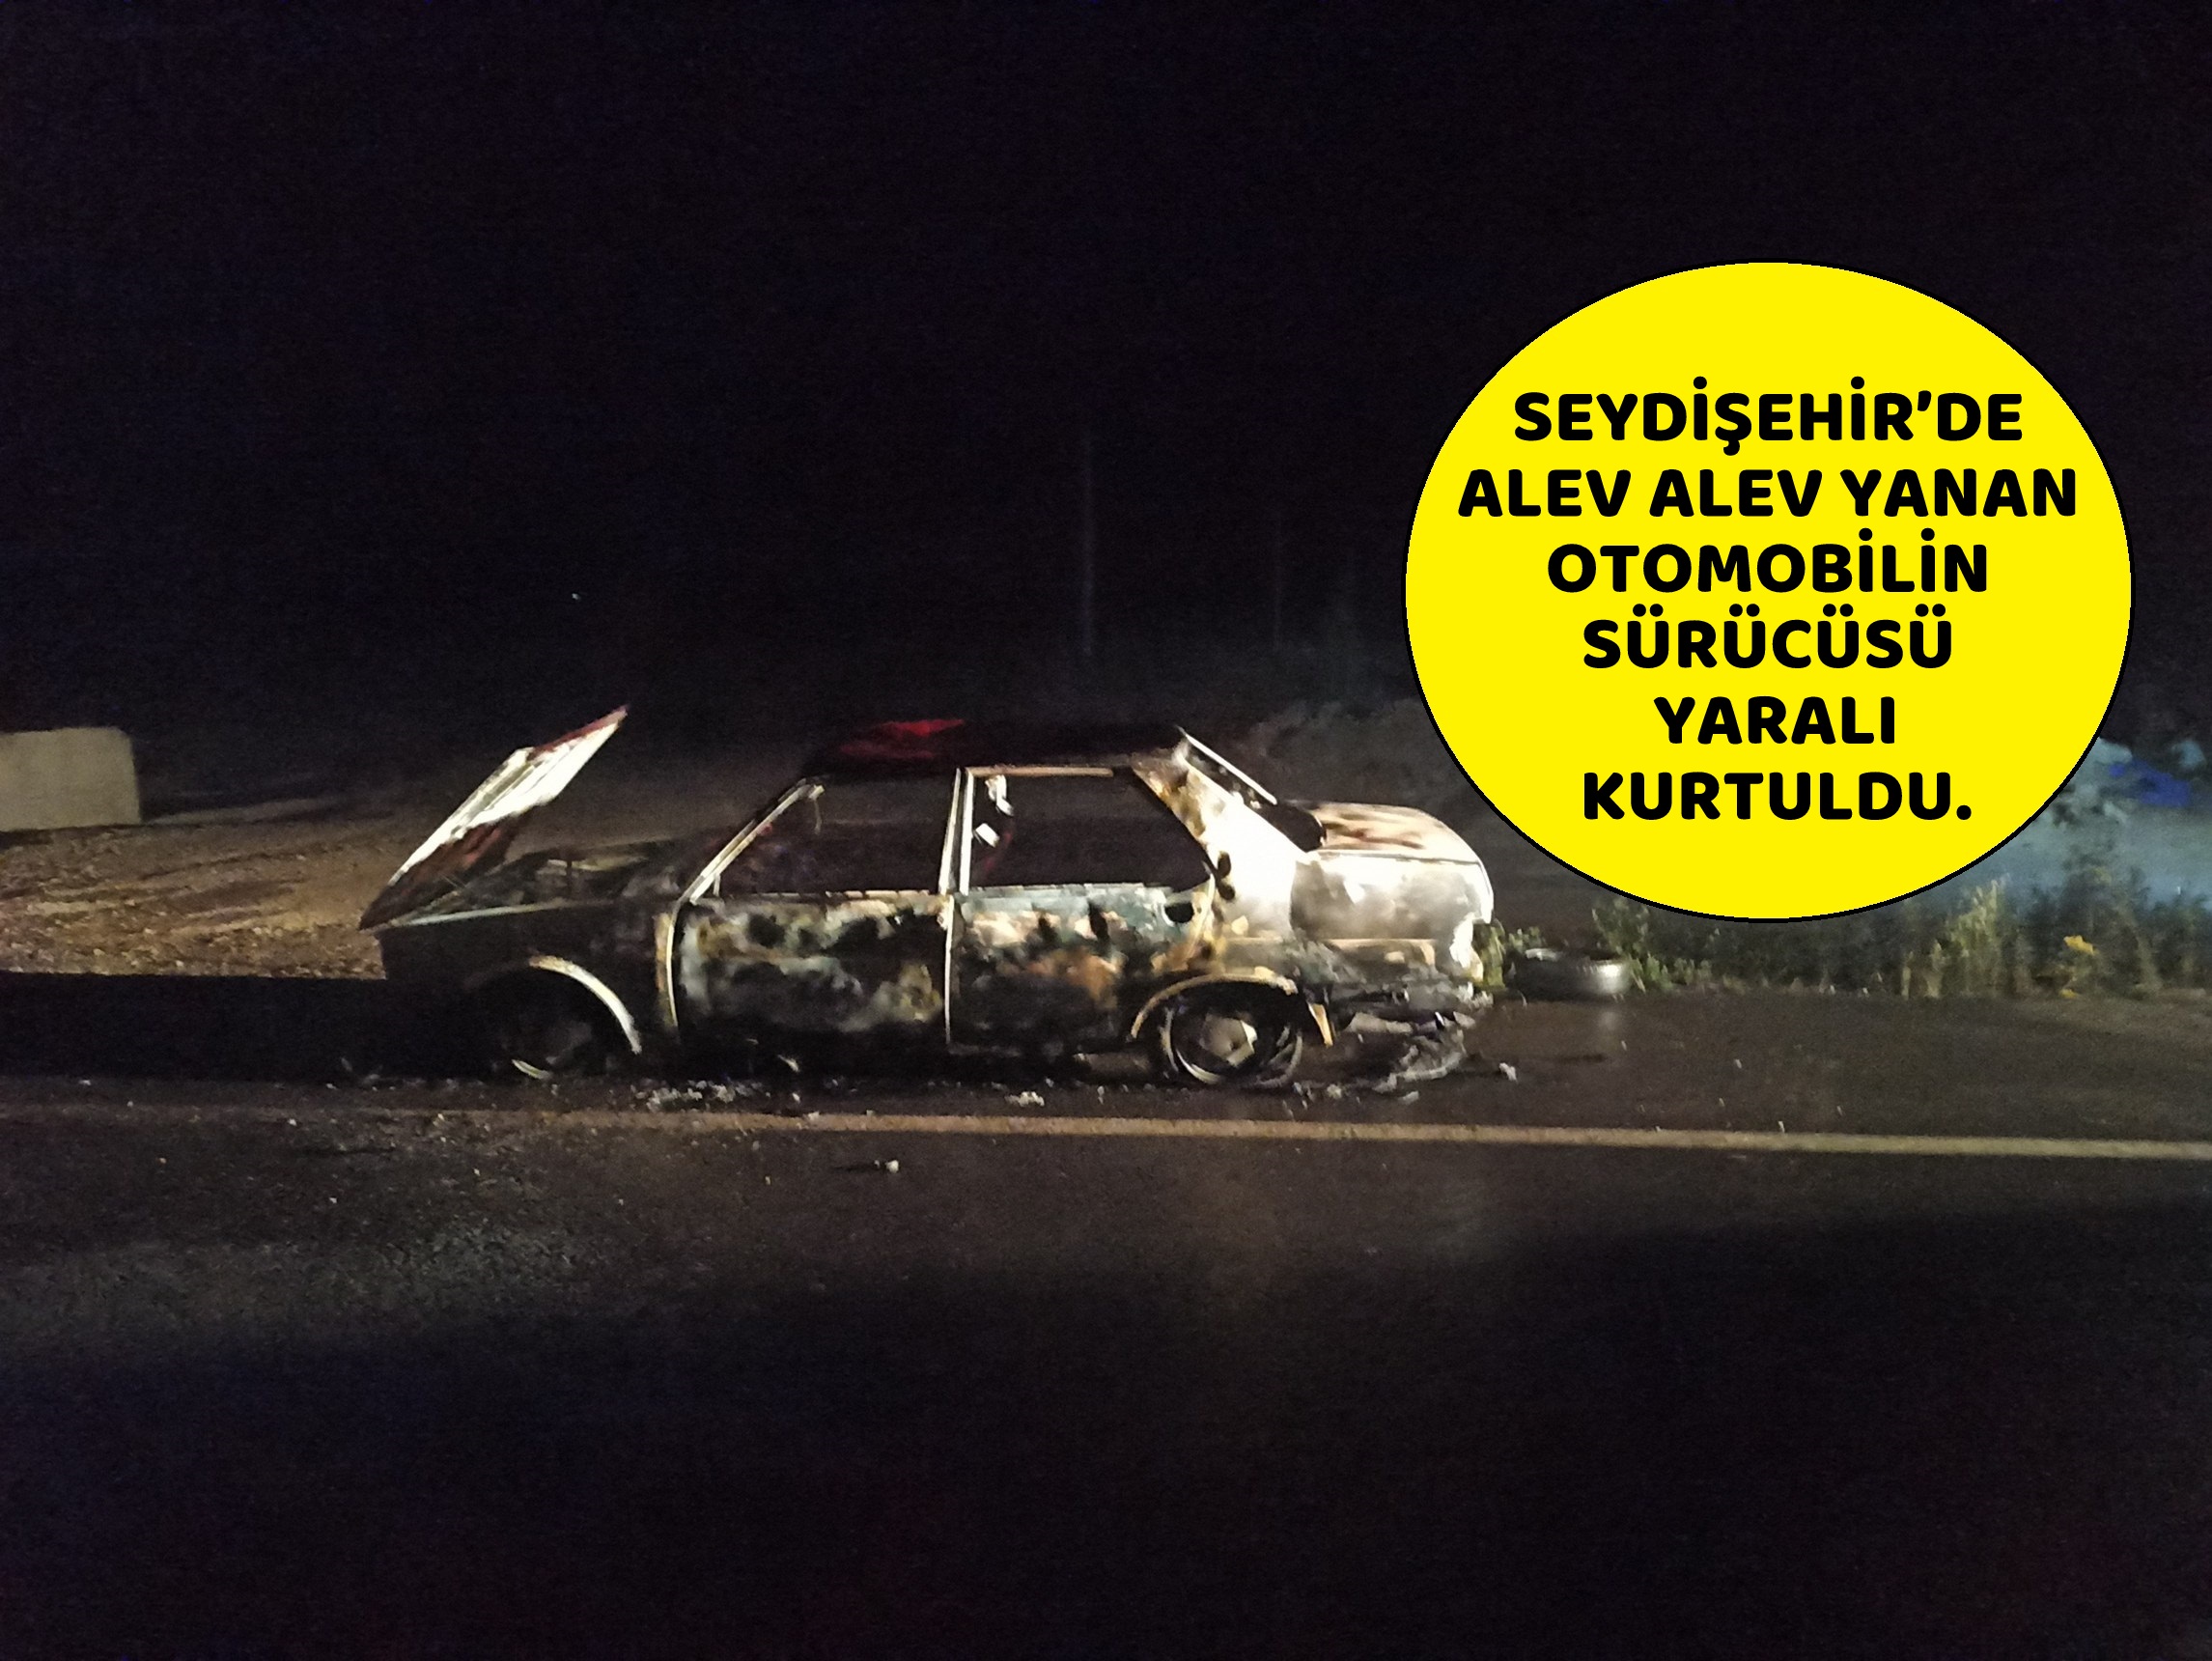 Seydişehir’de alev alev yanan otomobilin sürücüsü yaralandı. VİDEO